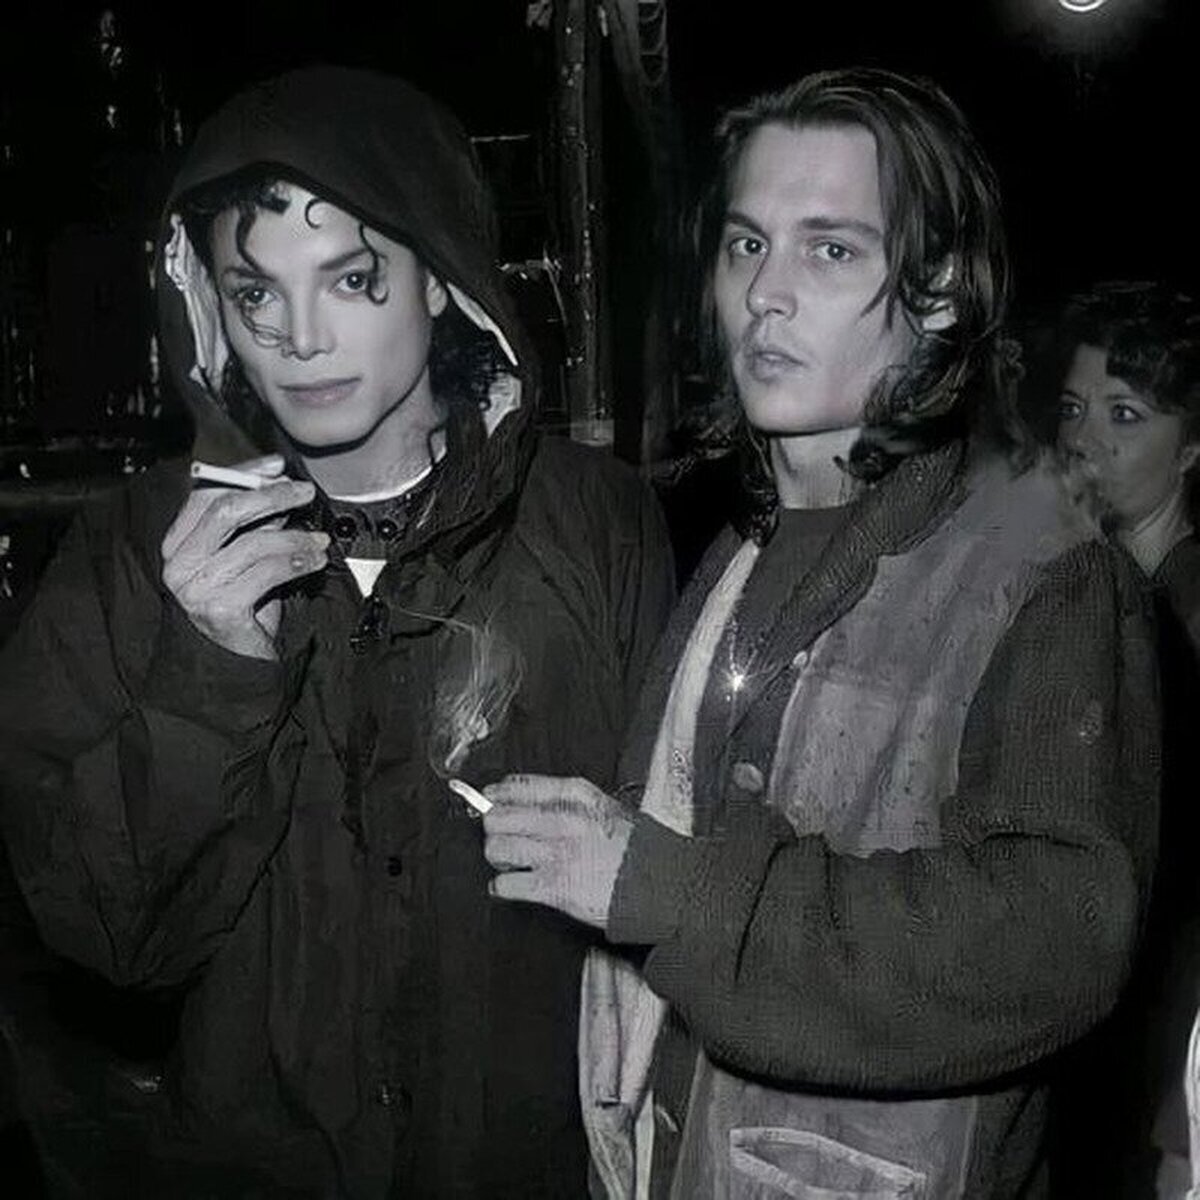 Johnny Depp y Jackson en una imagen mágica